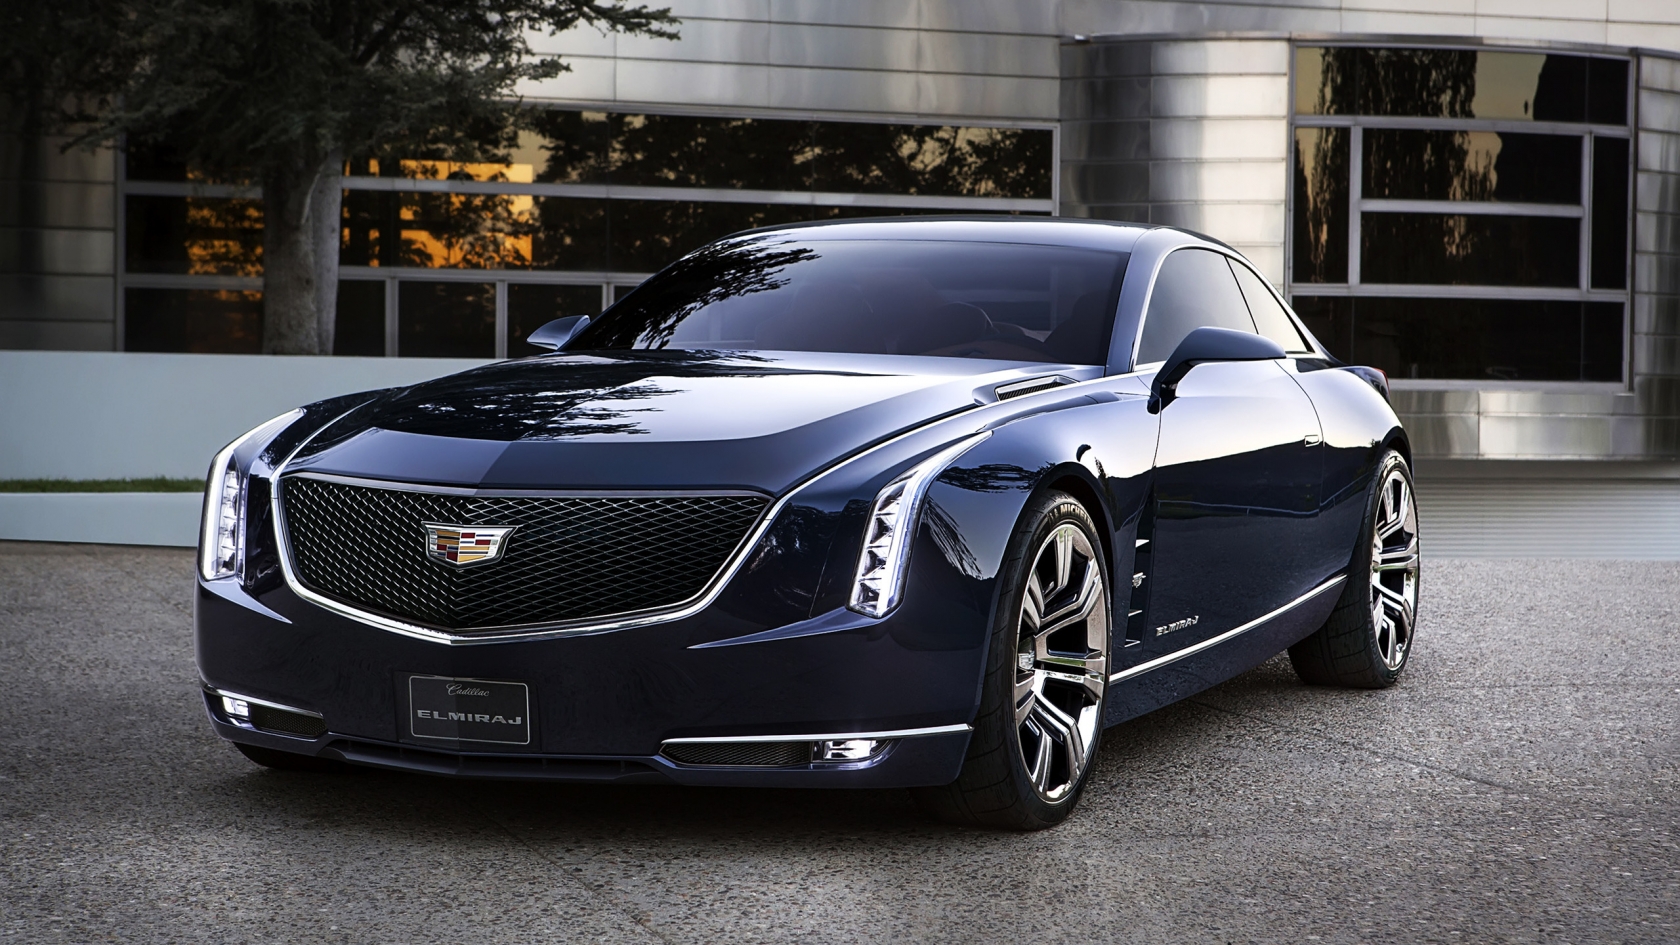 2013 Cadillac Elmiraj Concept for 1680 x 945 HDTV resolution